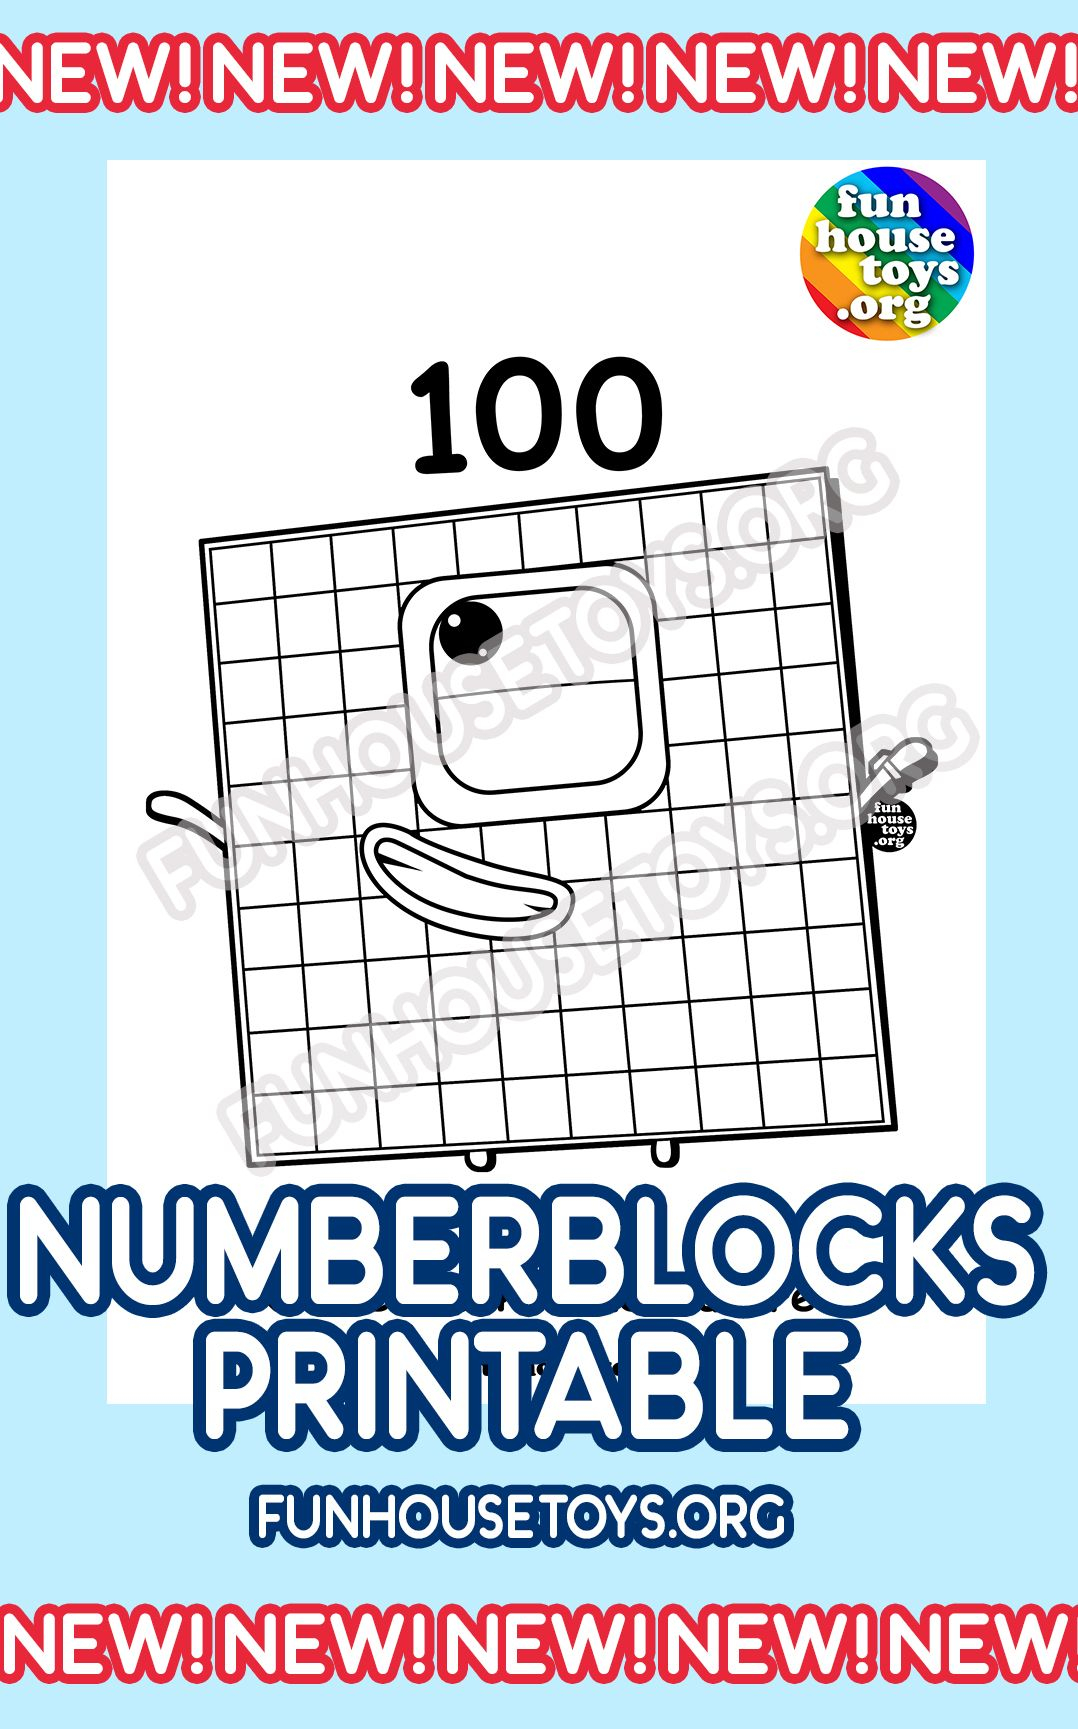 Numberblocks 2020 